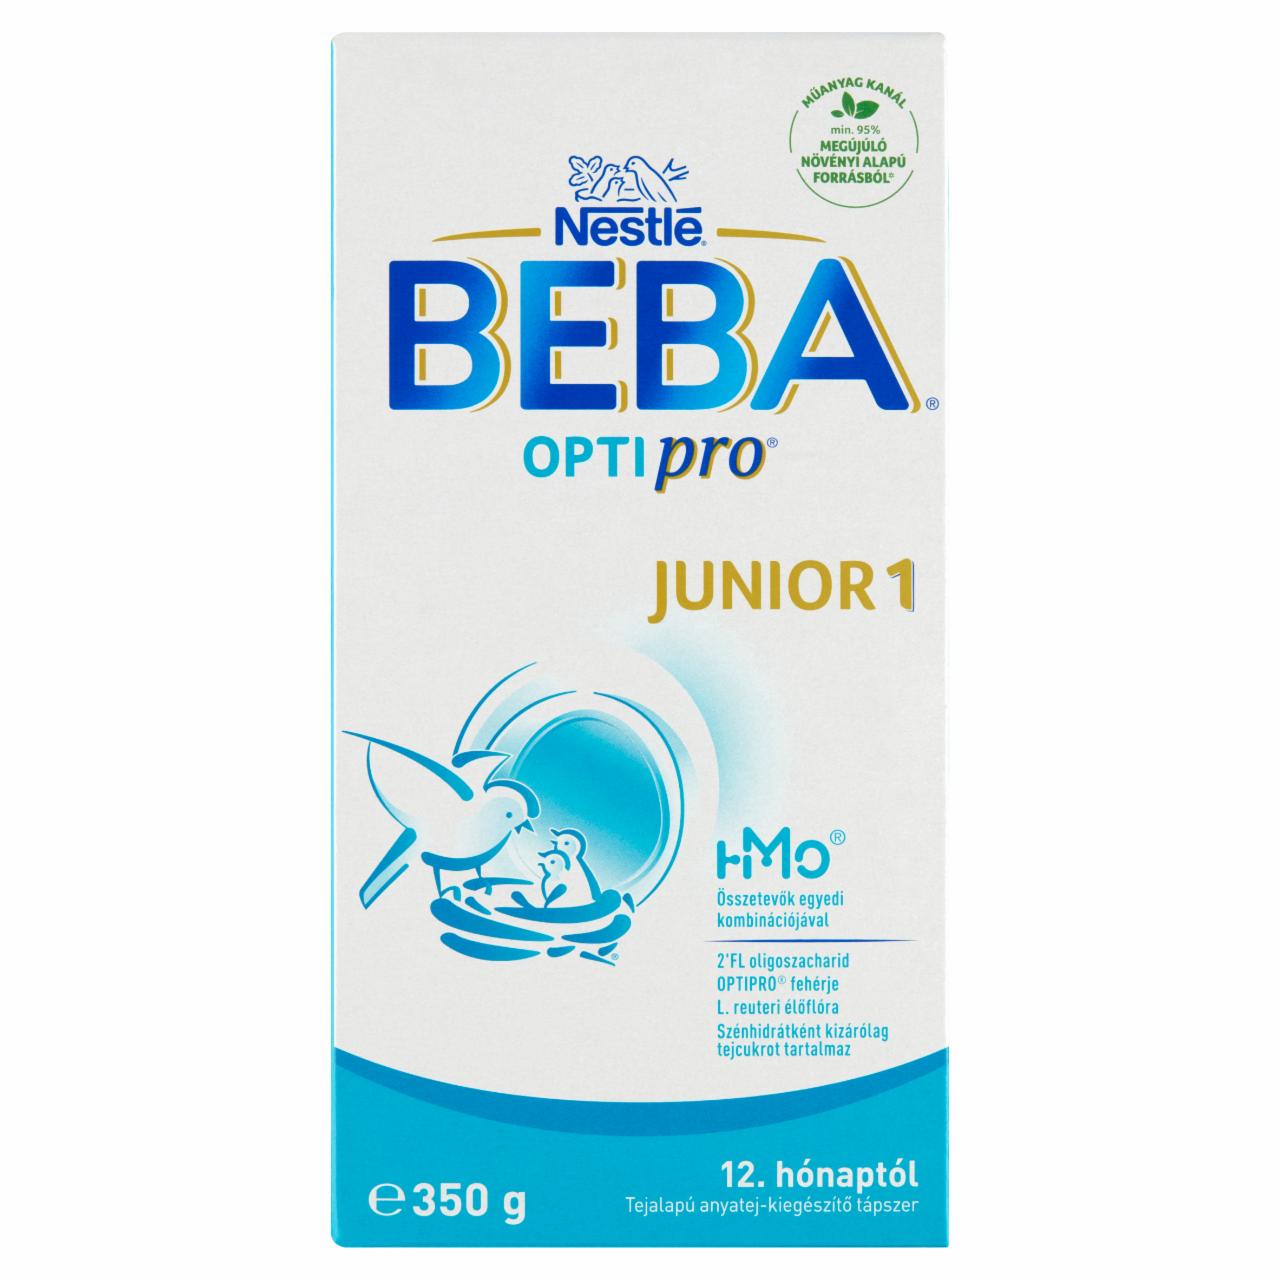 Képek - Beba Optipro Junior 1 tejalapú anyatej-kiegészítő tápszer 12. hónaptól 350 g